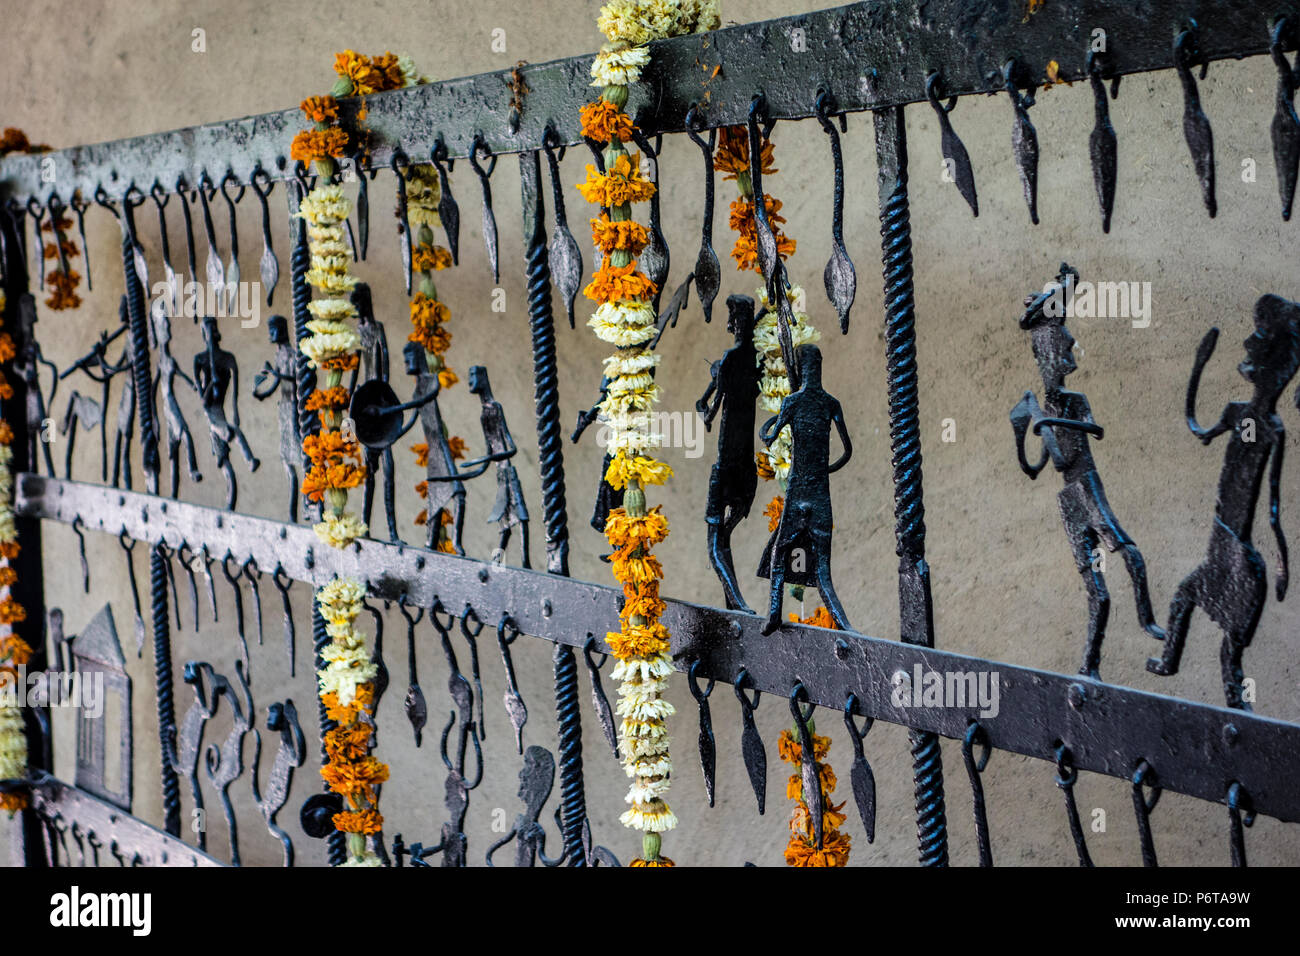 La pièce d'une porte en fer forgé ou une clôture de Bastar, Chhattisgarh décorés de guirlandes de fleurs dans l'artisanat, Musée National de New Delhi, Inde Banque D'Images